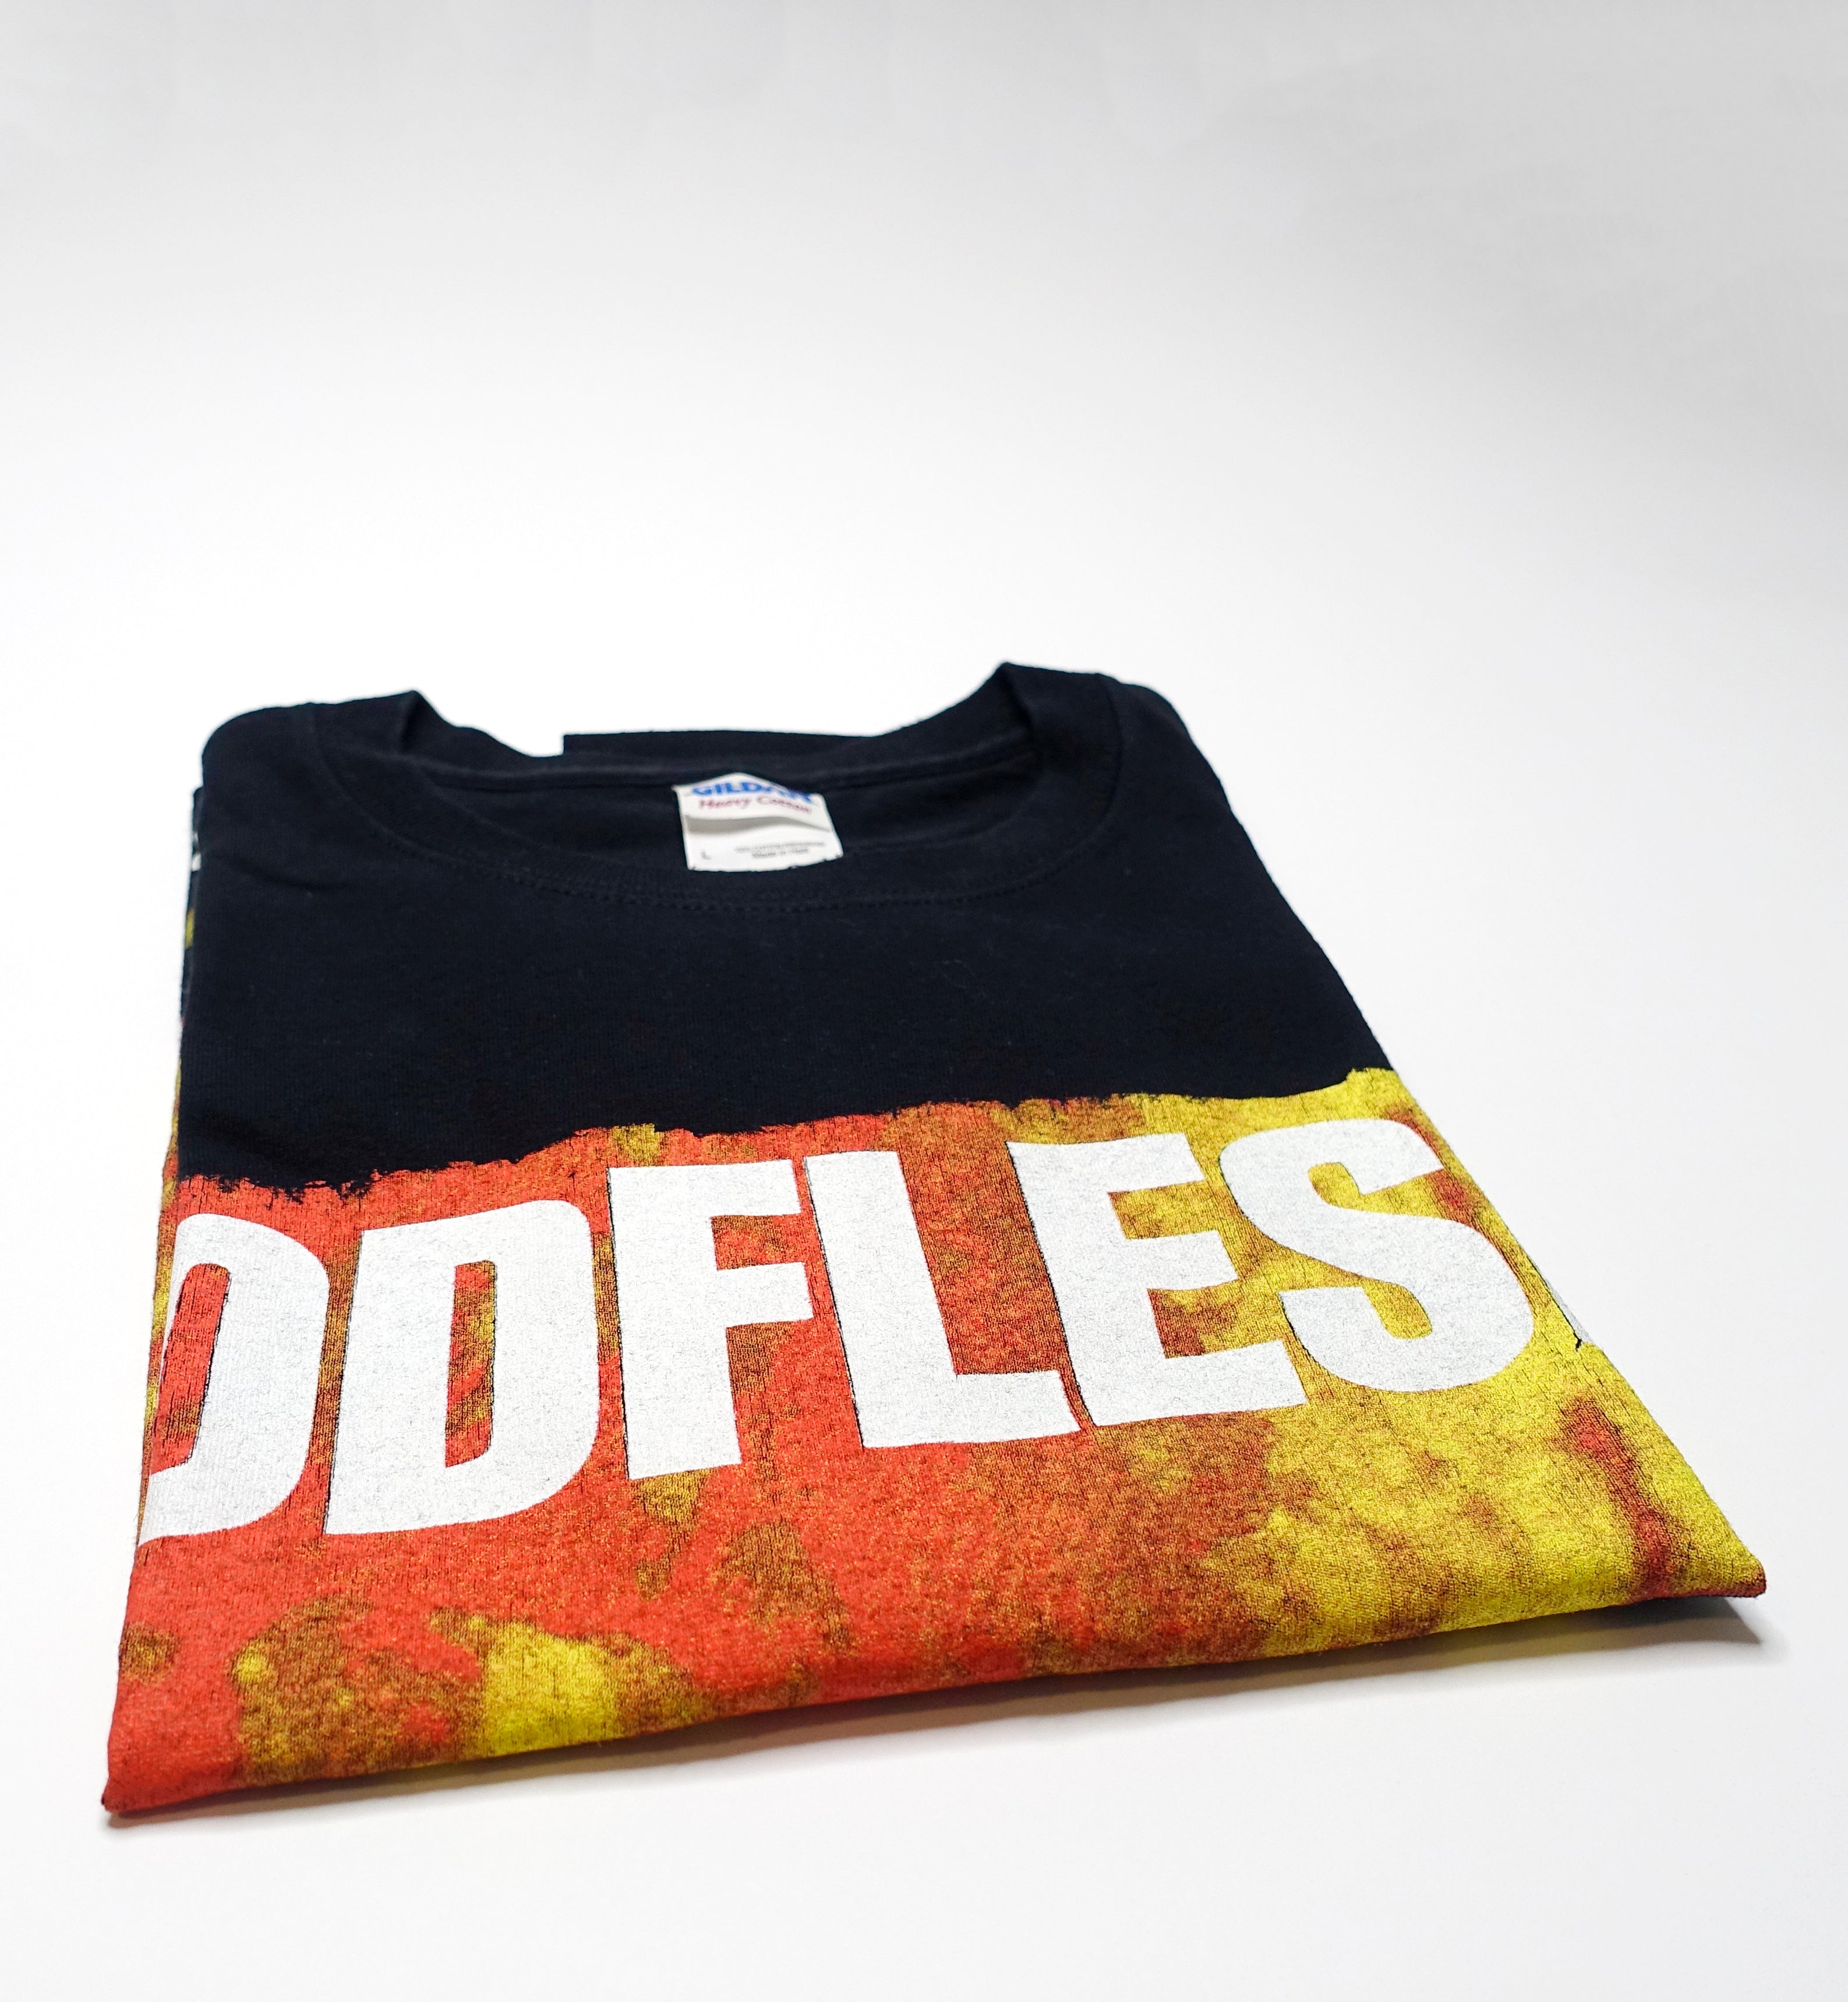 Godflesh - Streetcleaner Shirt Size Large